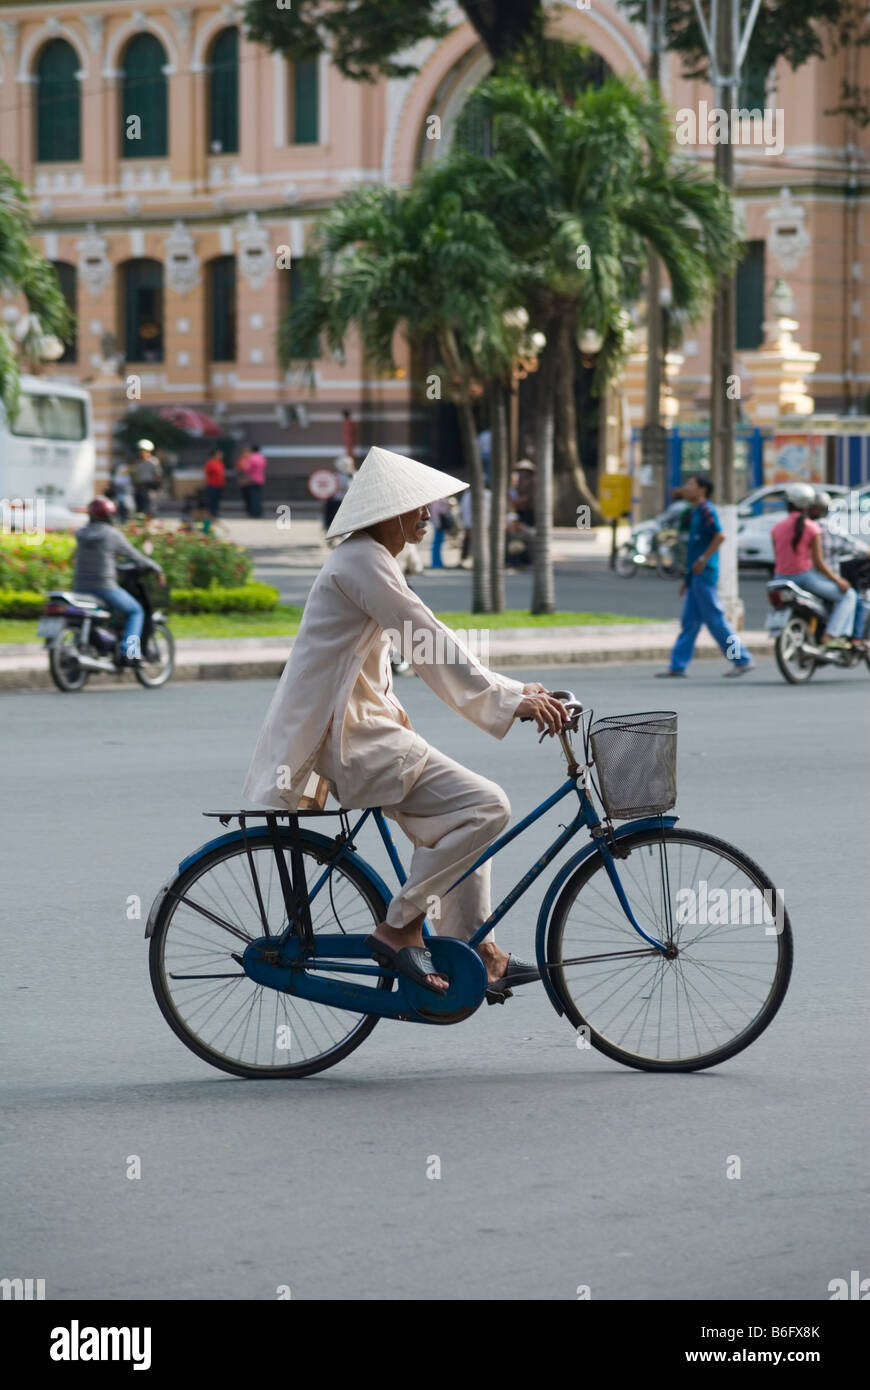 Un homme portant des vêtements traditionnels vietnamiens et chapeau conique, vélo le long d'une rue dans le centre de Ho Chi Minh Ville, Vietnam Banque D'Images